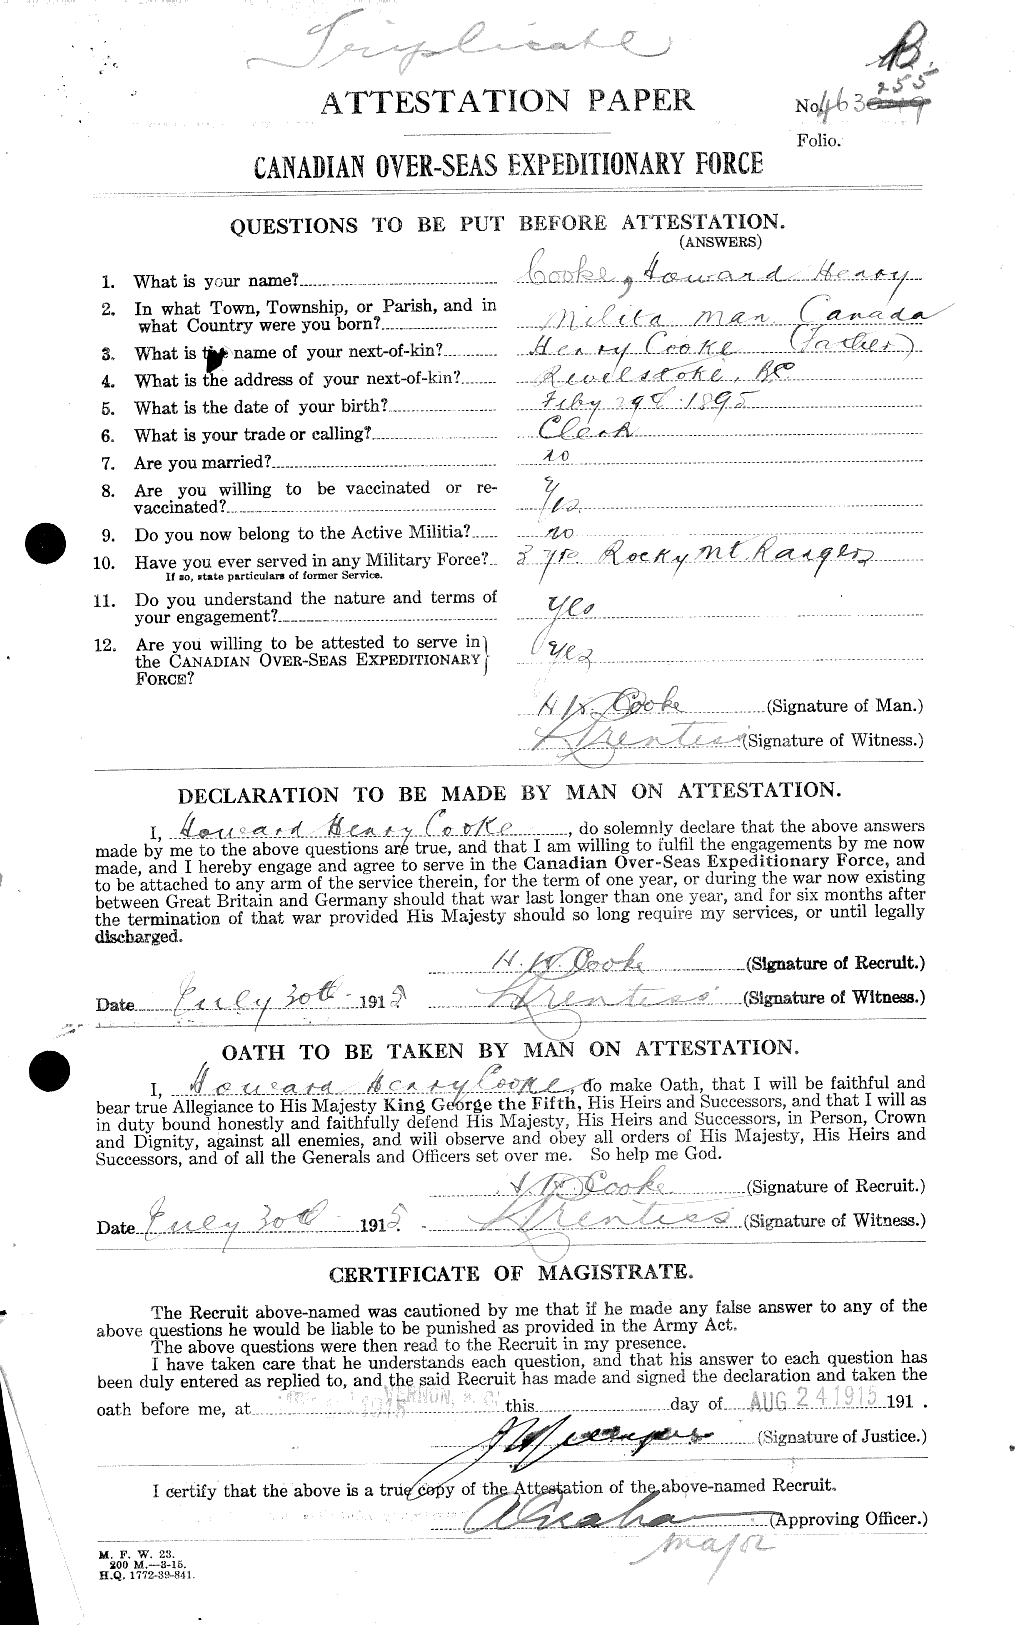 Dossiers du Personnel de la Première Guerre mondiale - CEC 041493a